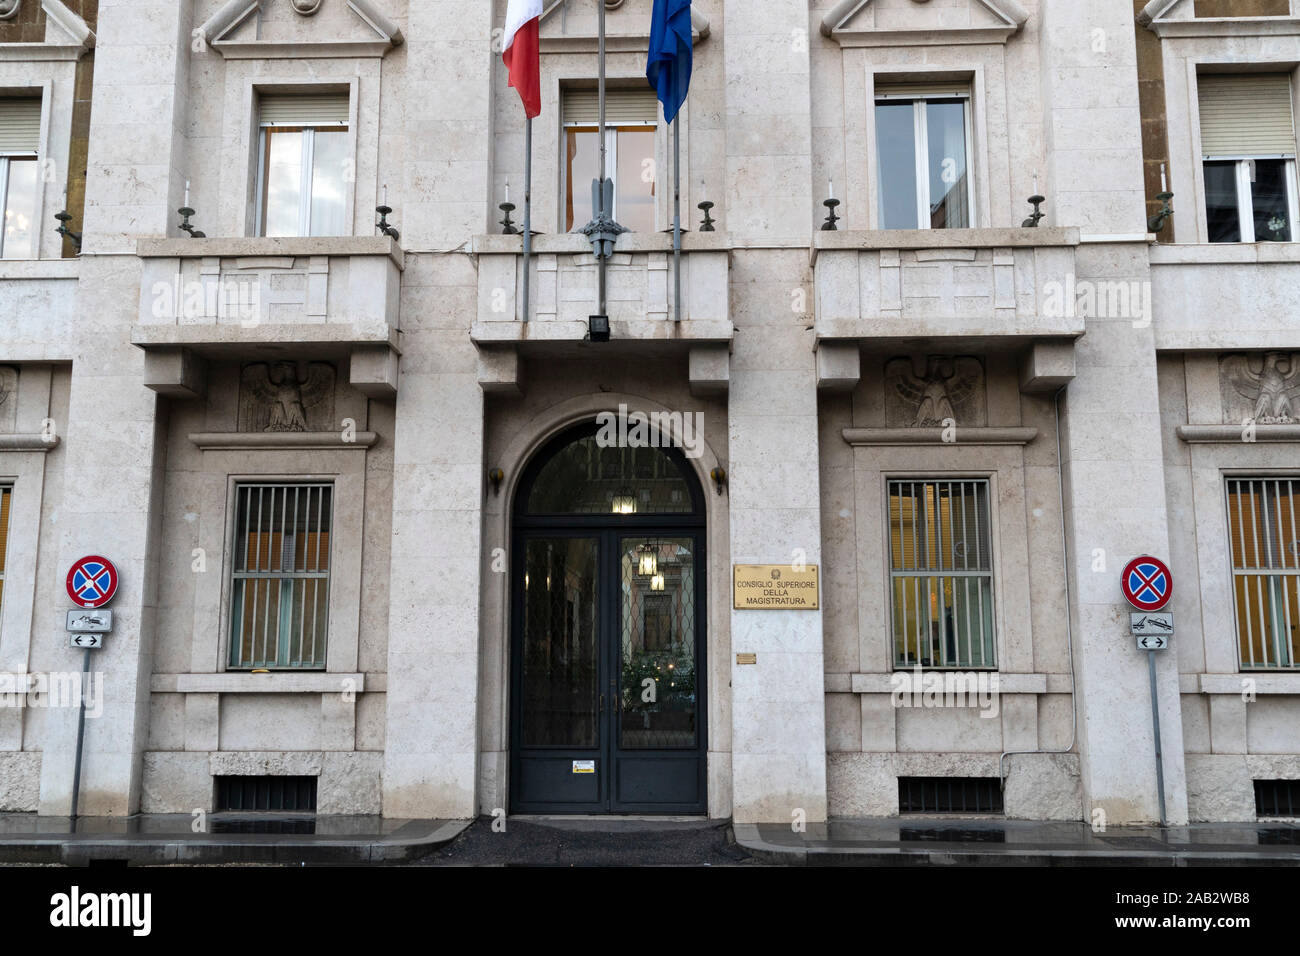 CSM Consiglio superiore della magistratura judicial building in Rome Stock  Photo - Alamy